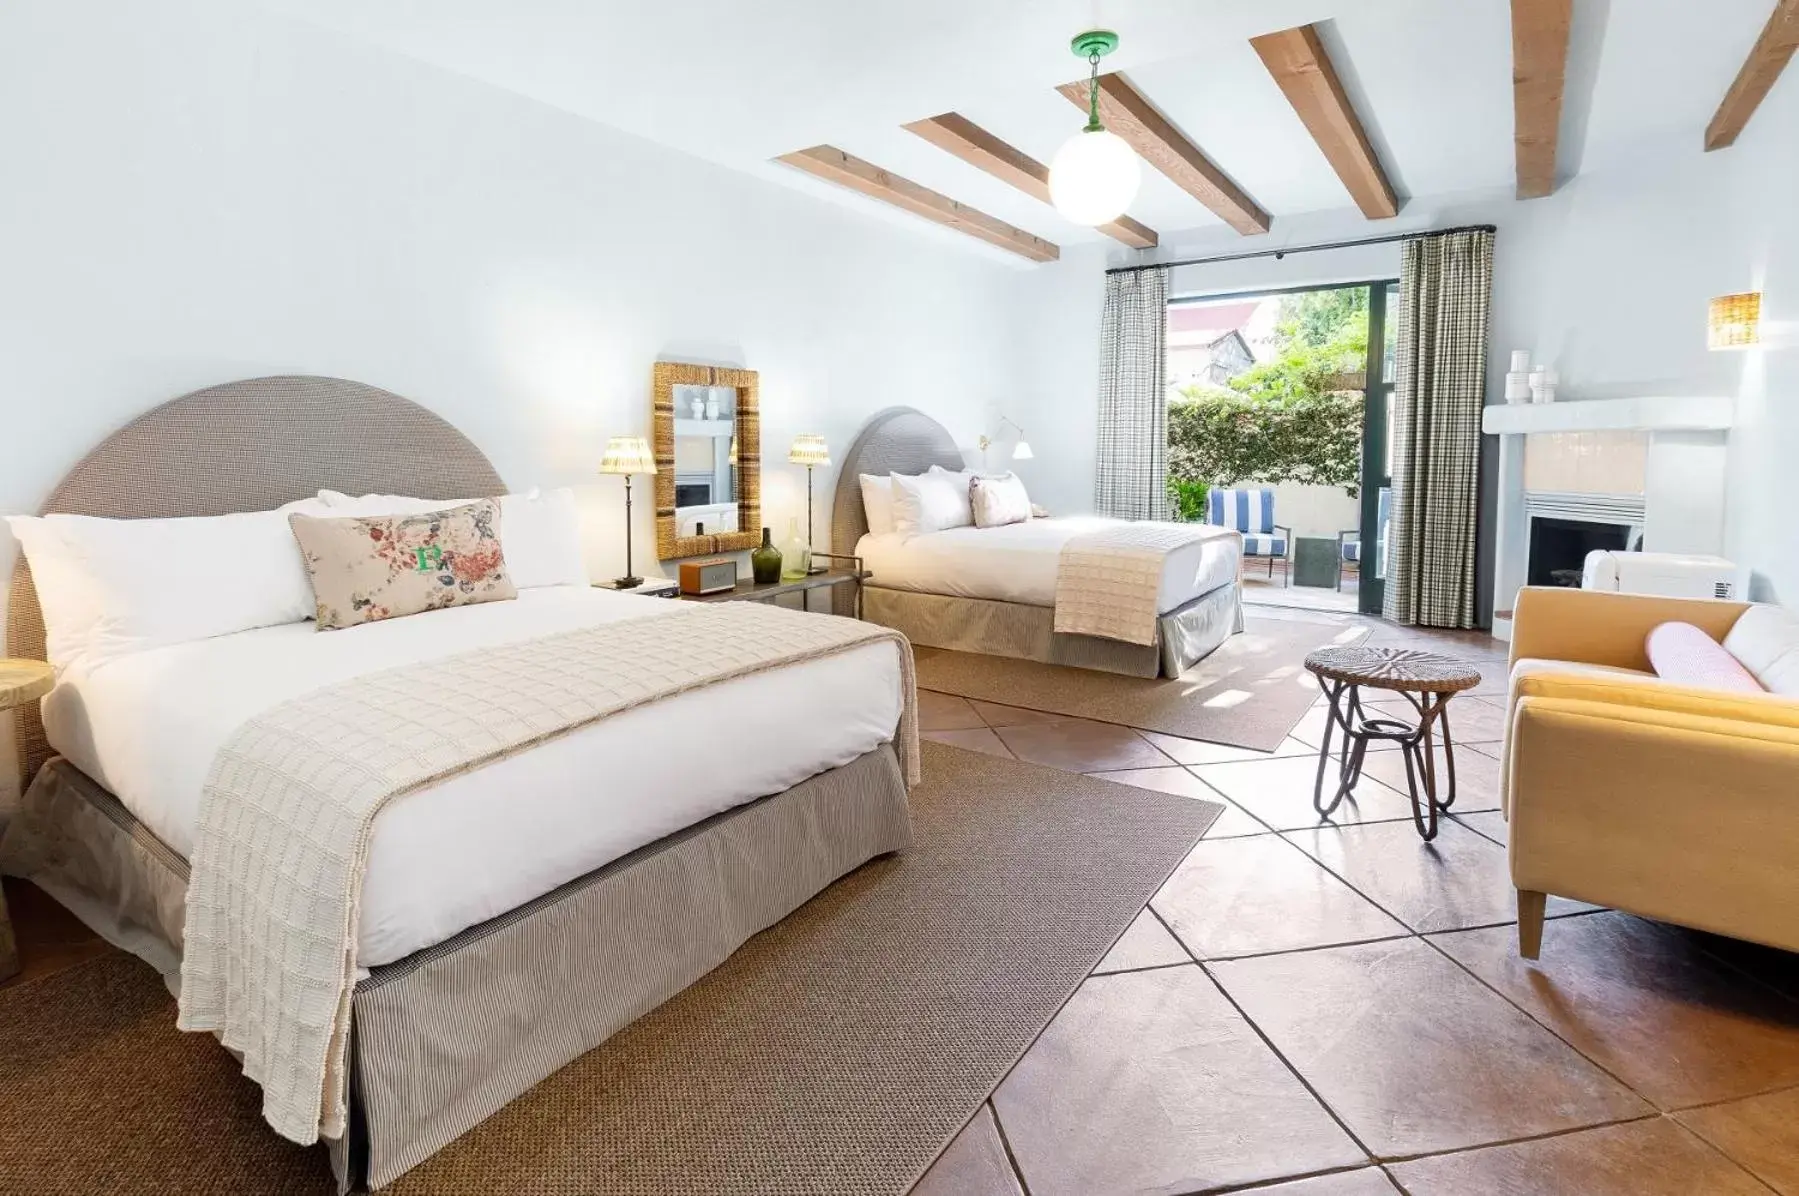 Bedroom in Palihouse Santa Barbara